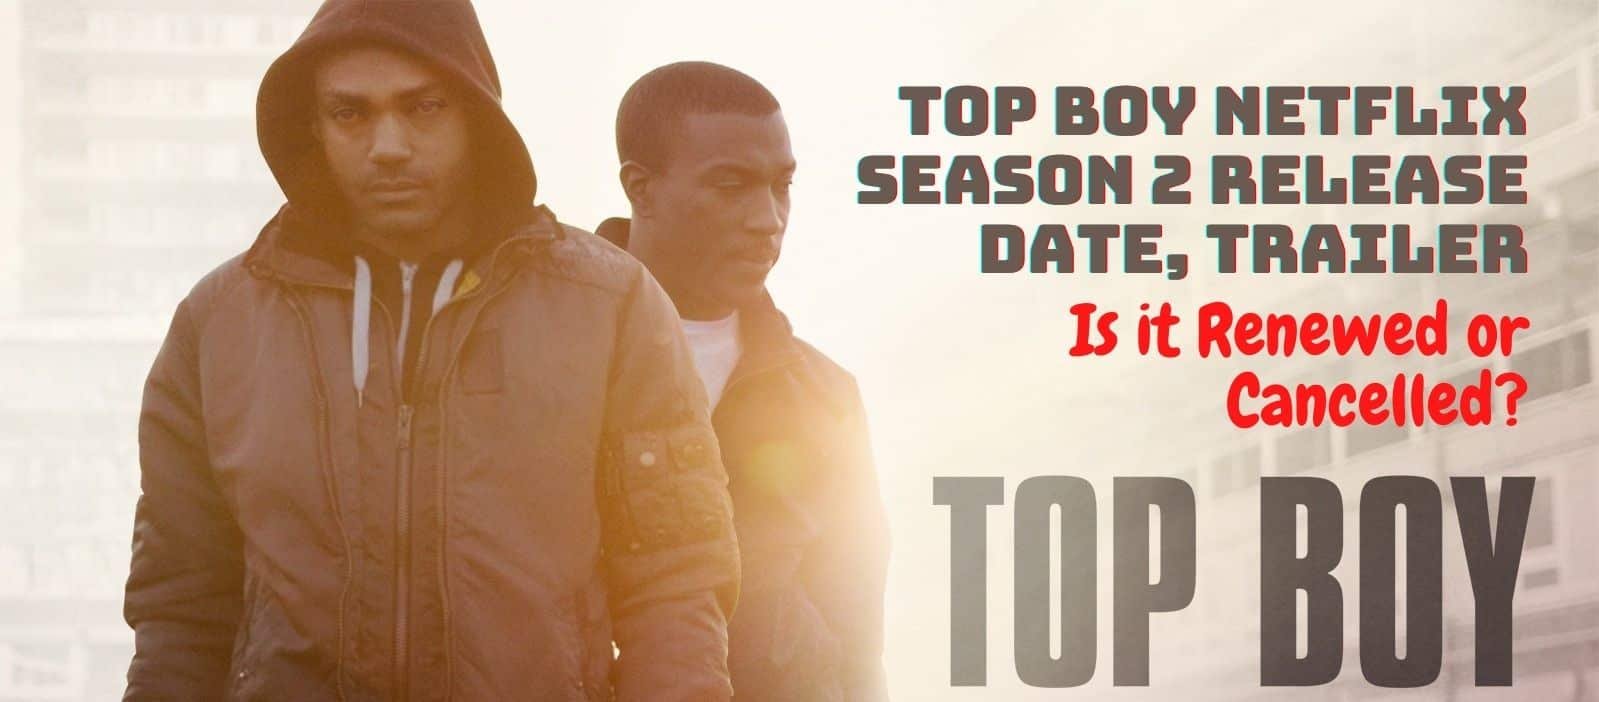 Top Boy Netflix Season 2 Release Date, Trailer - Is it Renewed or Canceled?